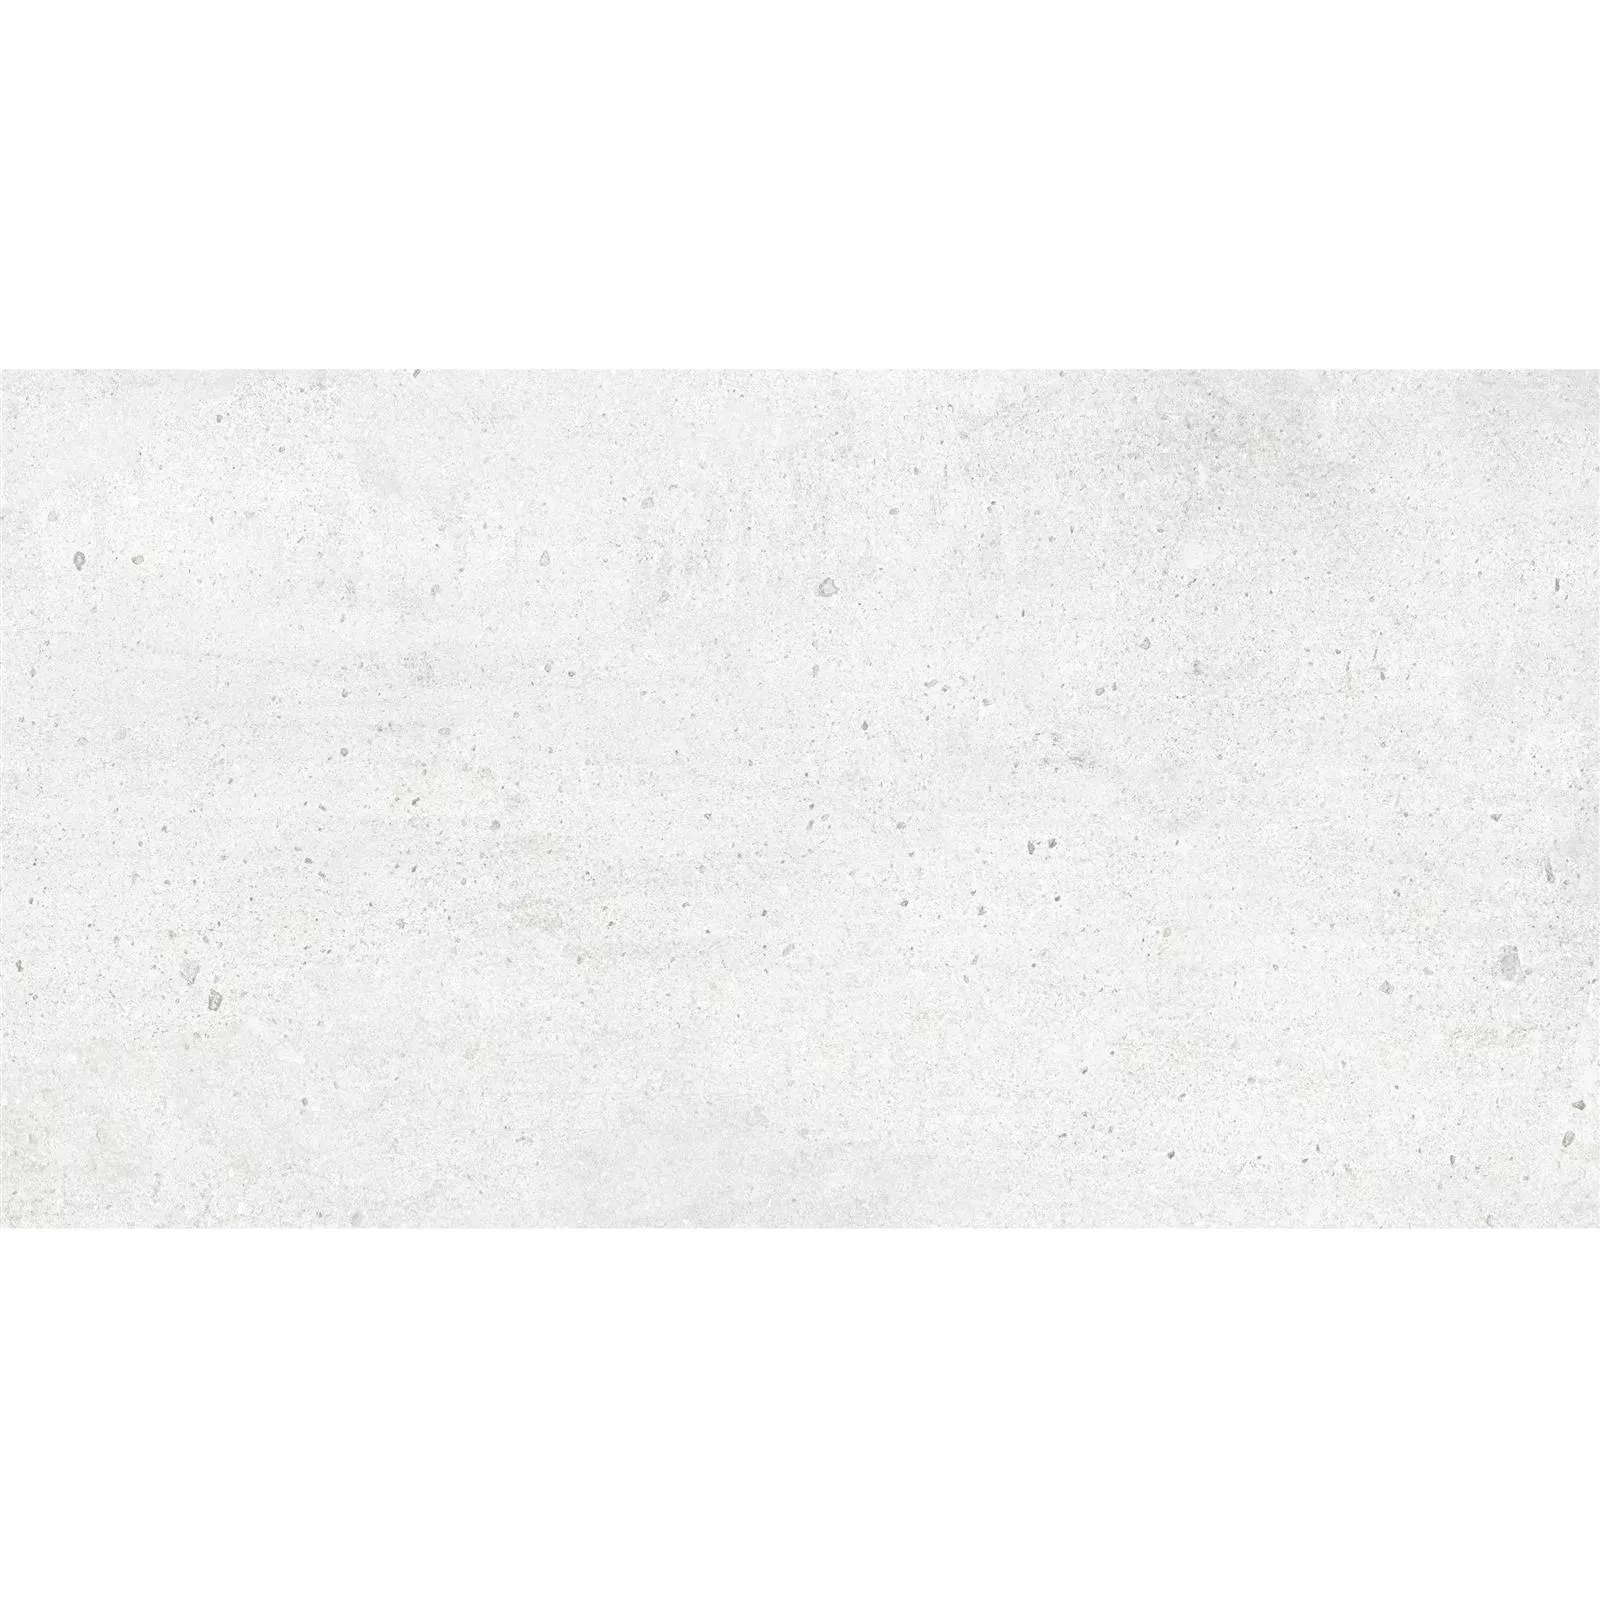 Bodenfliesen Freeland Steinoptik R10/B Weiß 30x60cm